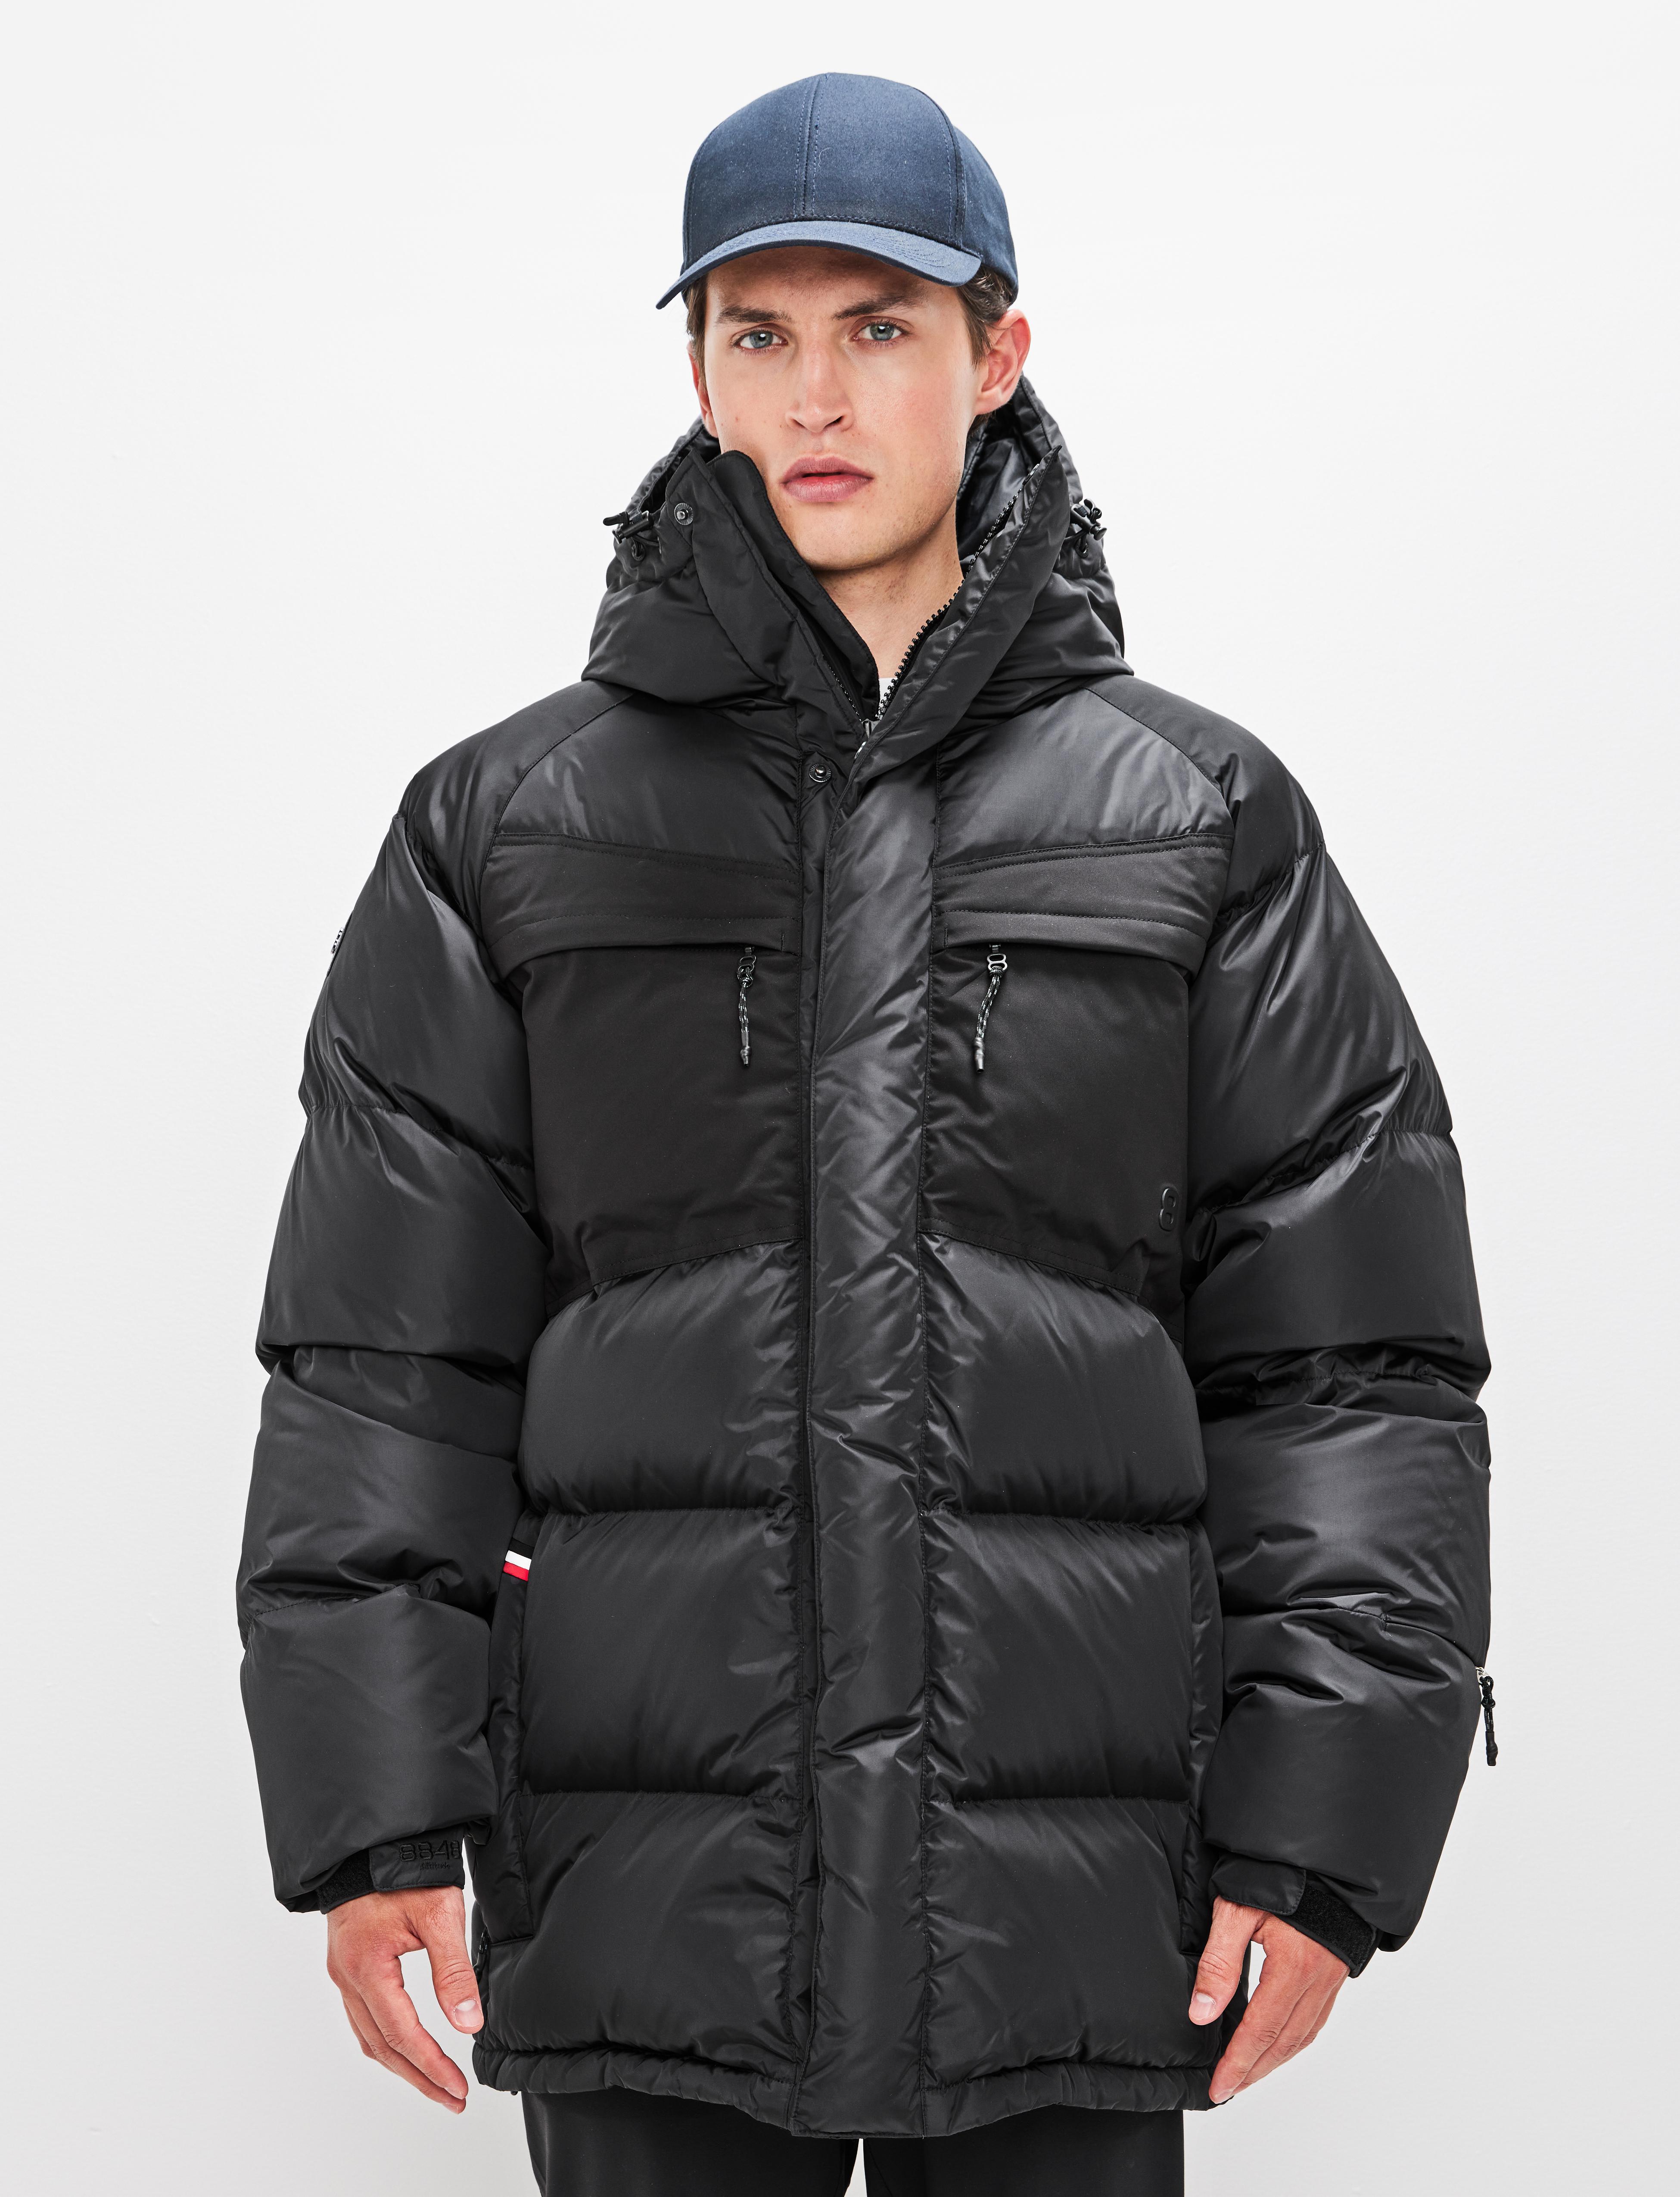 Premium Ski Fashion | Technical Outerwear Exclusive Streetstyle 8848